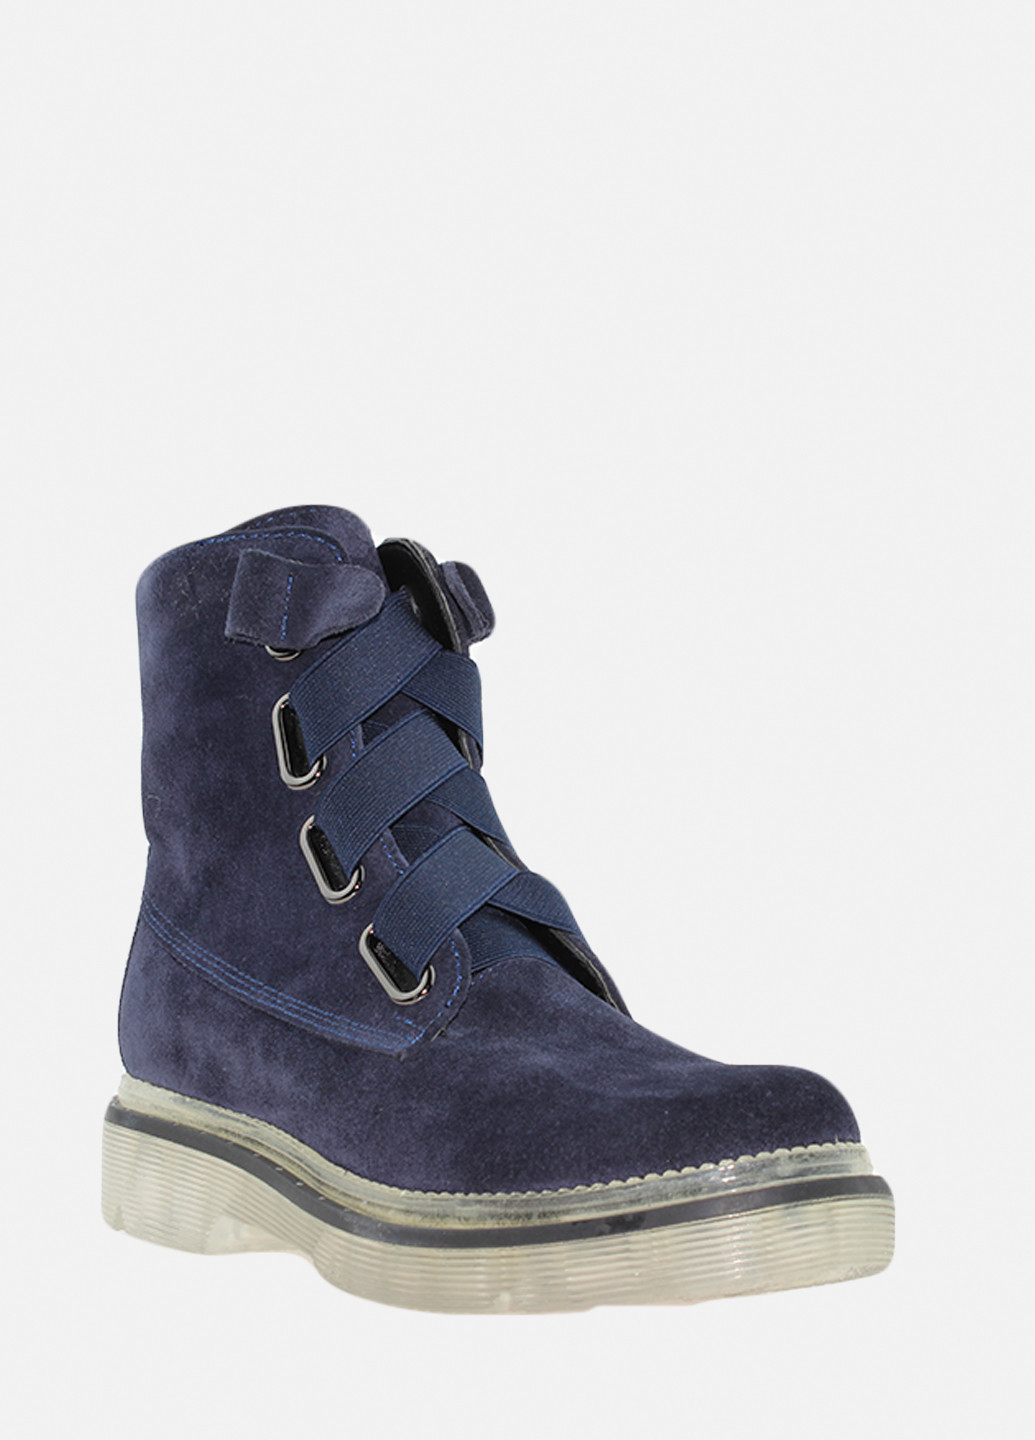 Зимние ботинки rd677-11 синий Dalis из натуральной замши